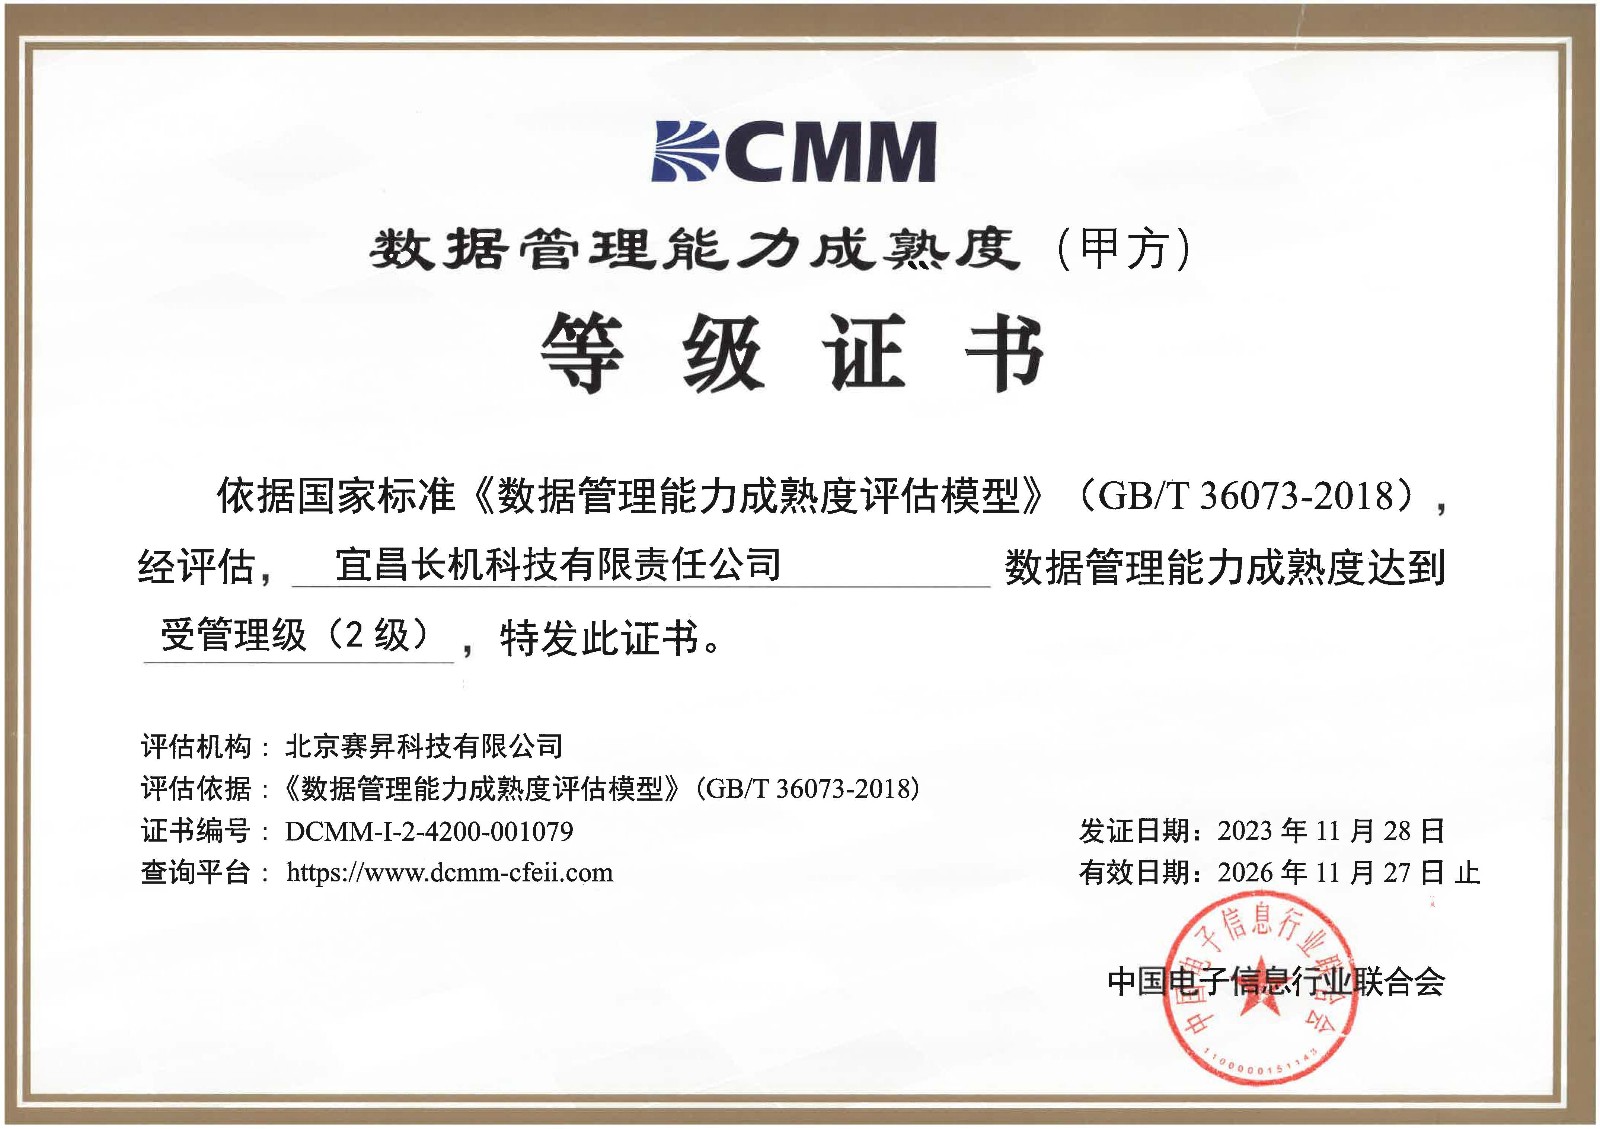 6686体育通过DCMM数据管理能力贯标等级认证